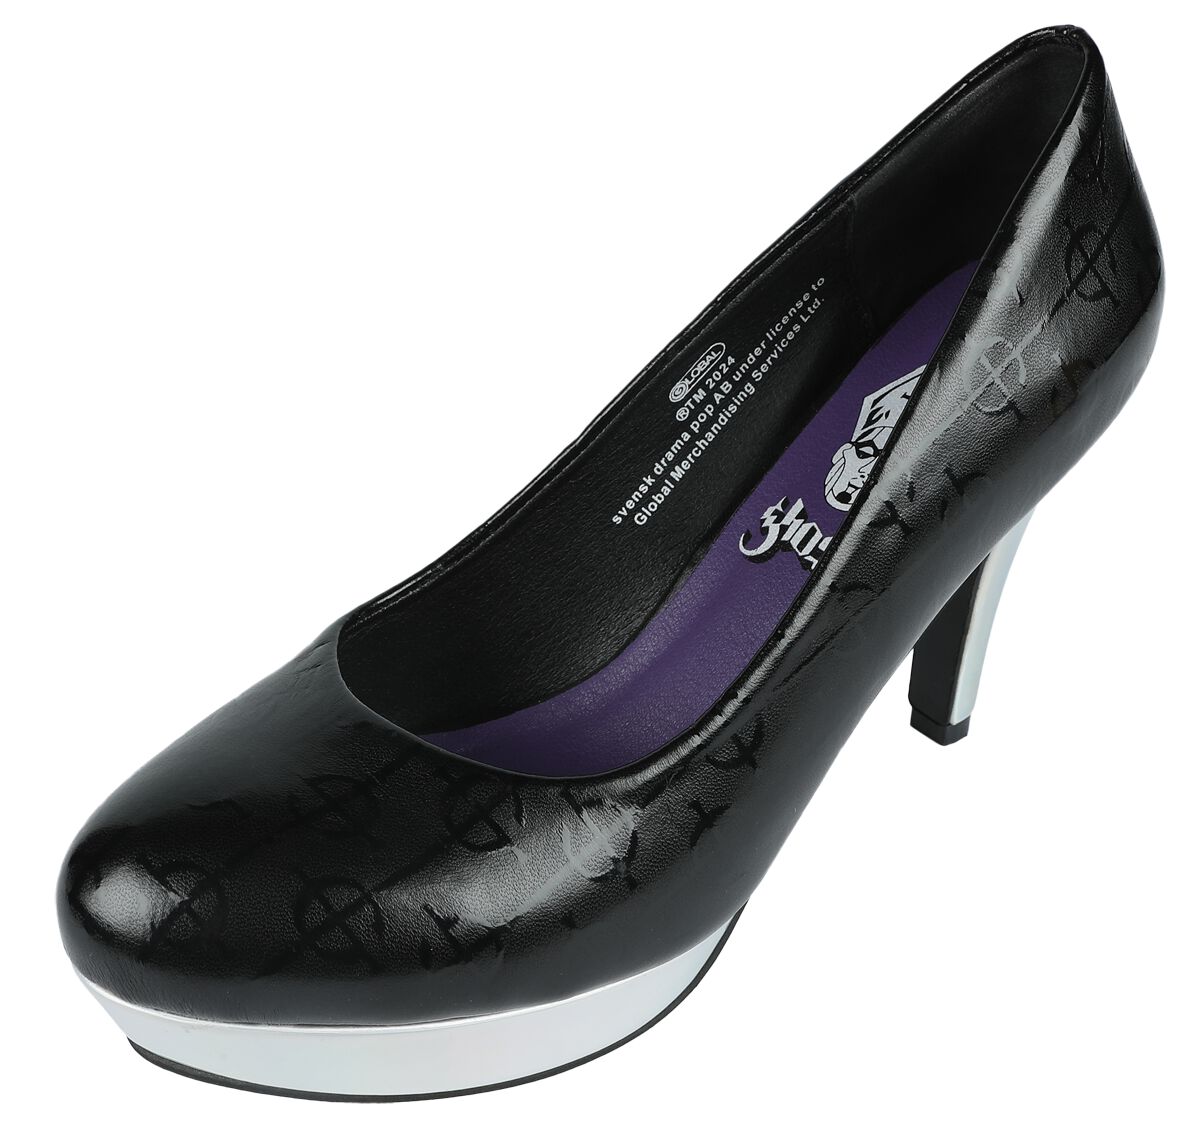 Ghost EMP Signature Collection High Heel schwarz silberfarben in EU41 von Ghost